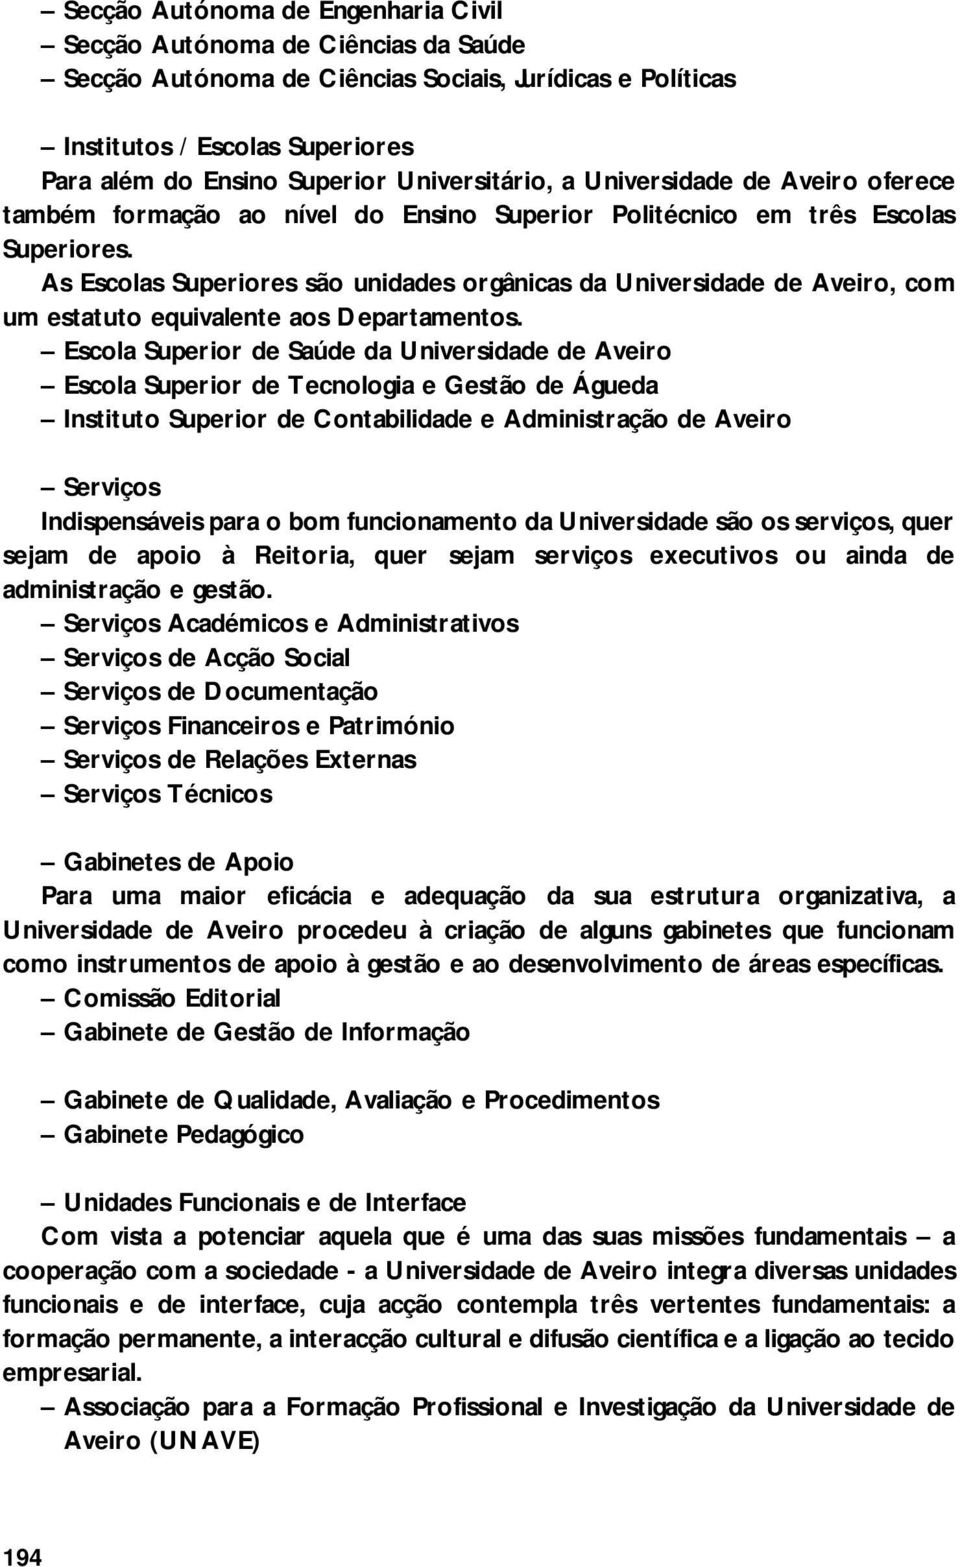 As Escolas Superiores são unidades orgânicas da Universidade de Aveiro, com um estatuto equivalente aos Departamentos.